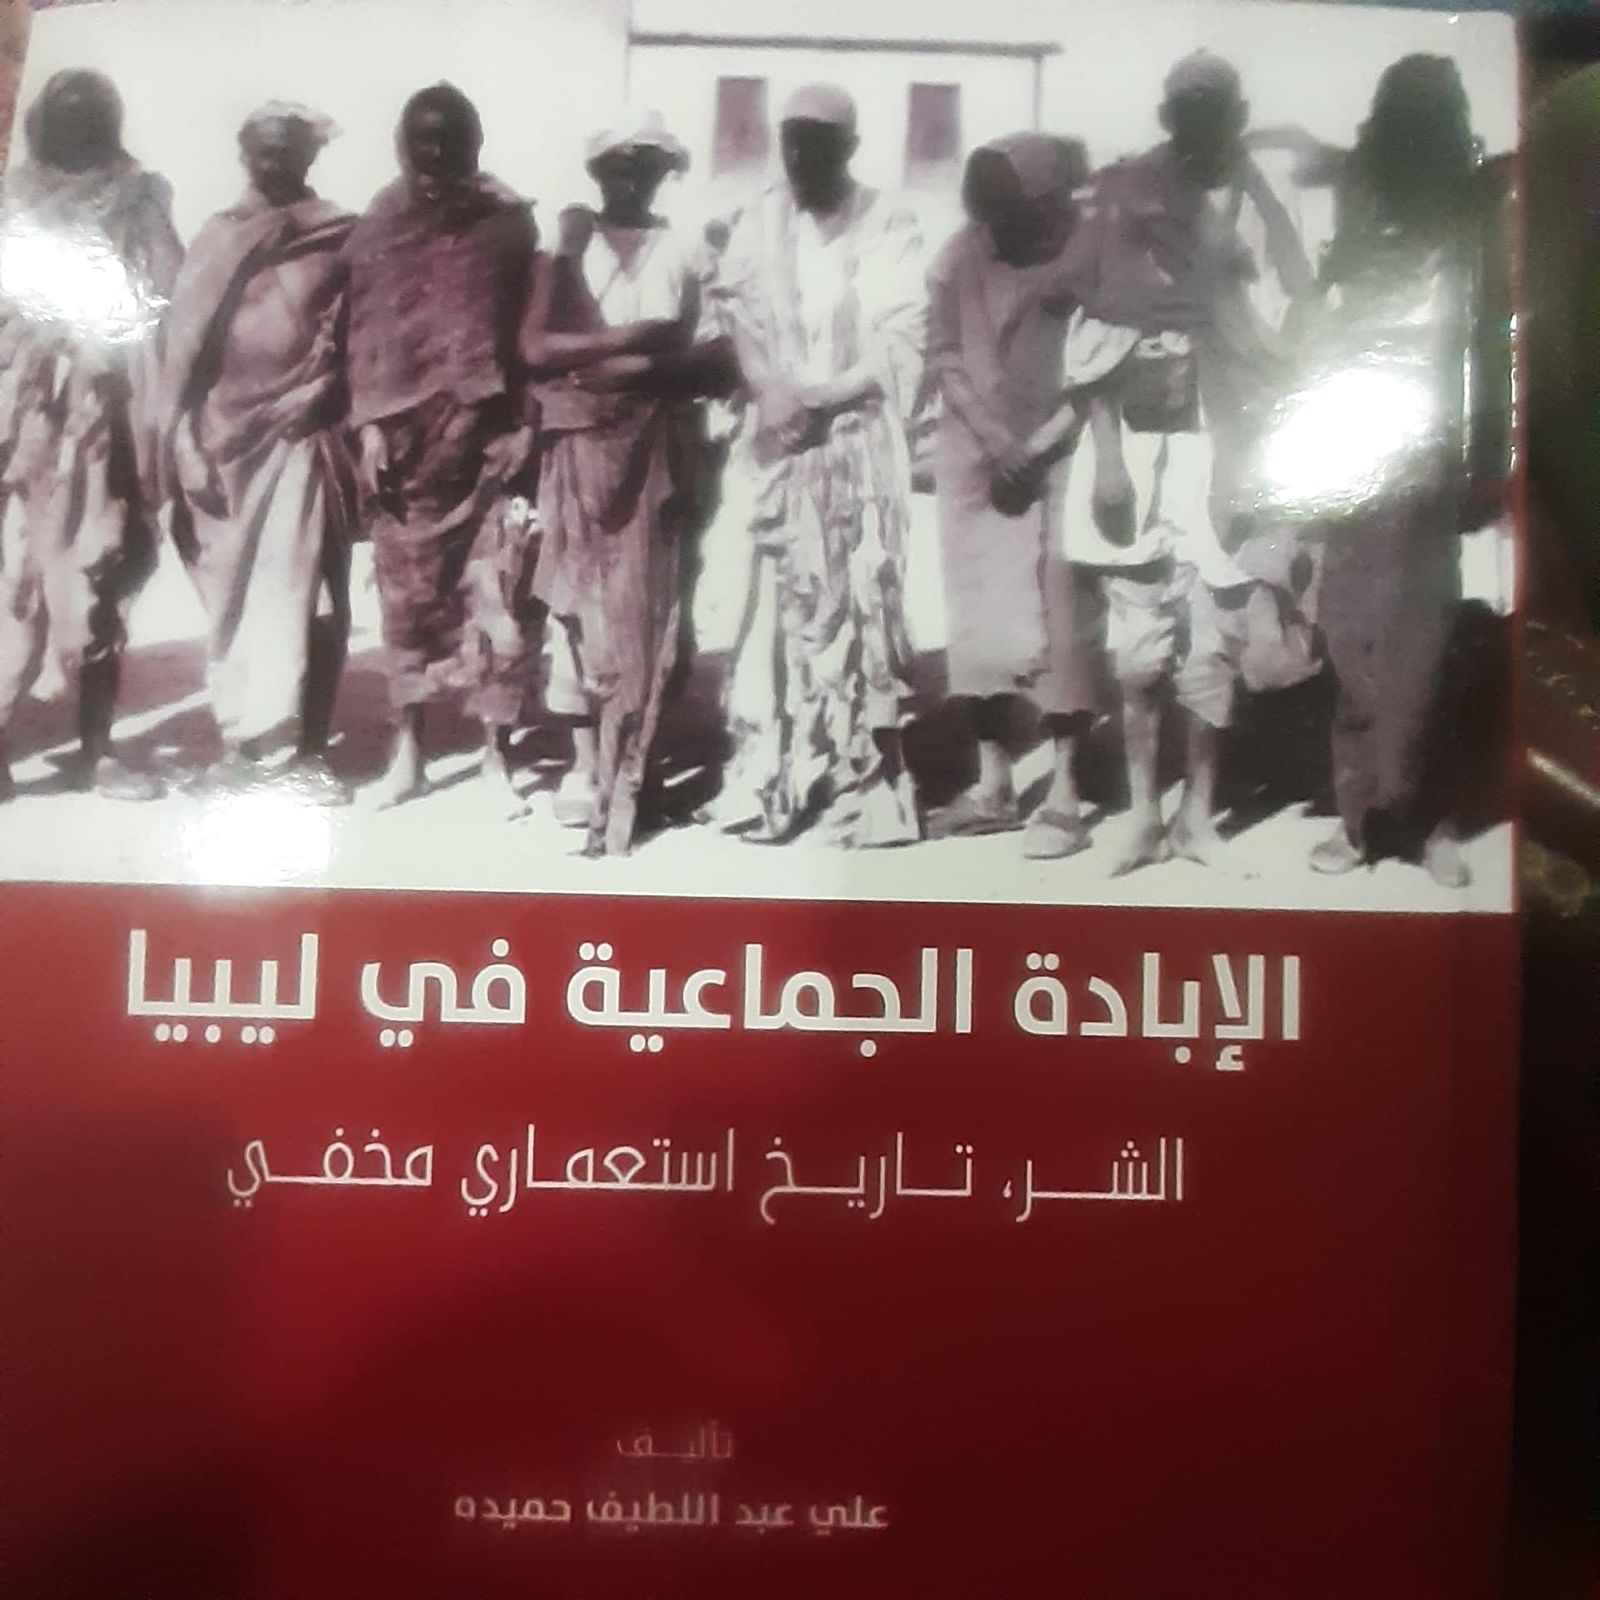 الدكتور علي احميدة يسلم نسخة من كتابه "الإبادة الجماعية في ليبيا" لمكتبة بهون